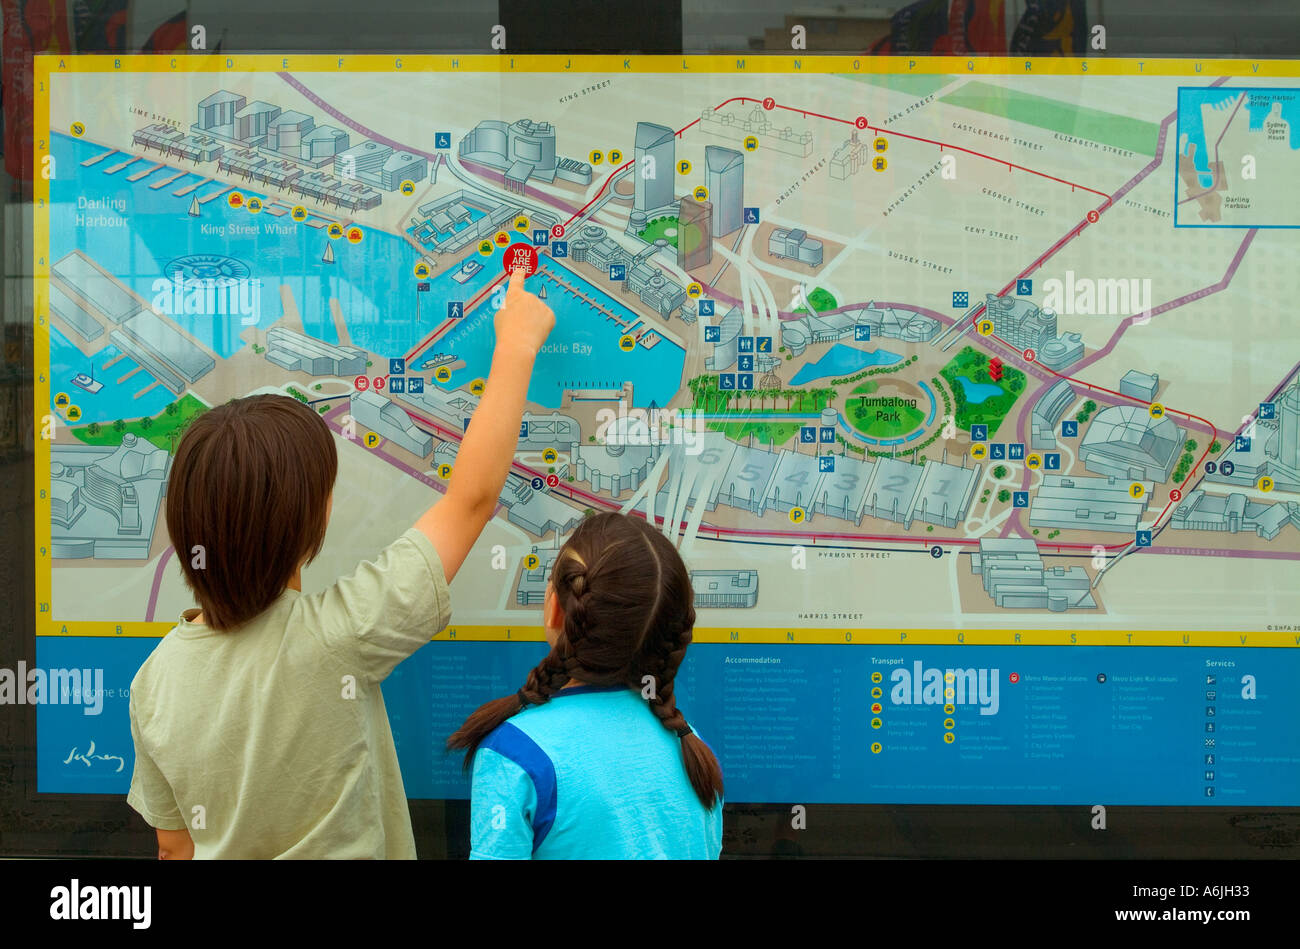 Deux enfants utilisent une carte de l'annuaire de la ville de Sydney, en Australie, pour localiser leur position Banque D'Images